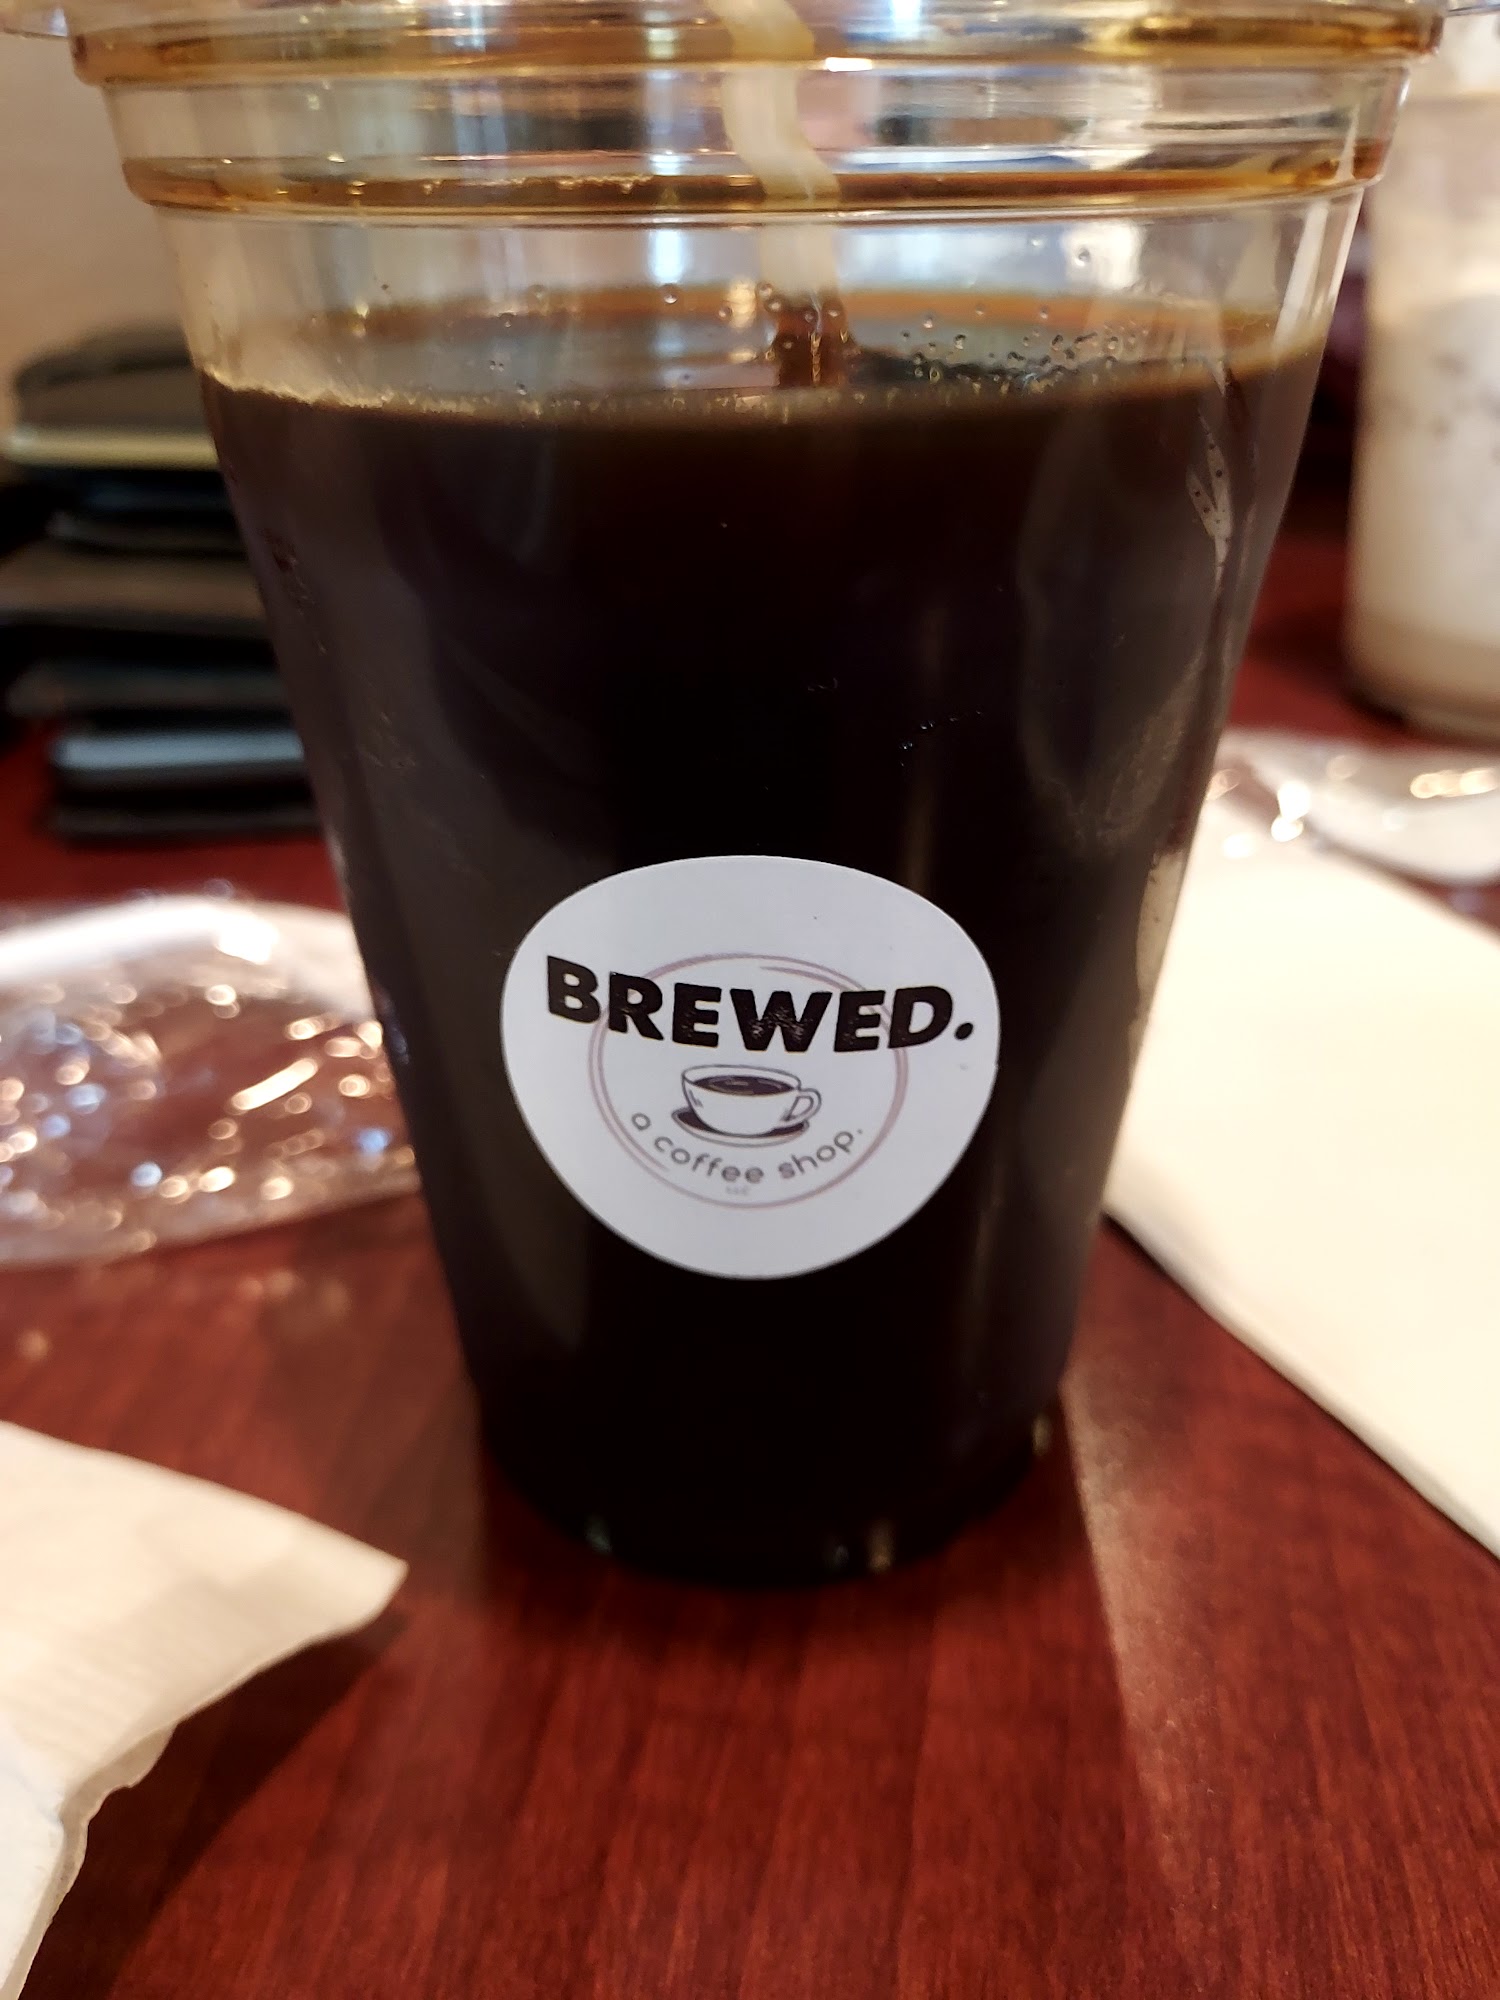 Brewed. A Coffee Shop. LLC